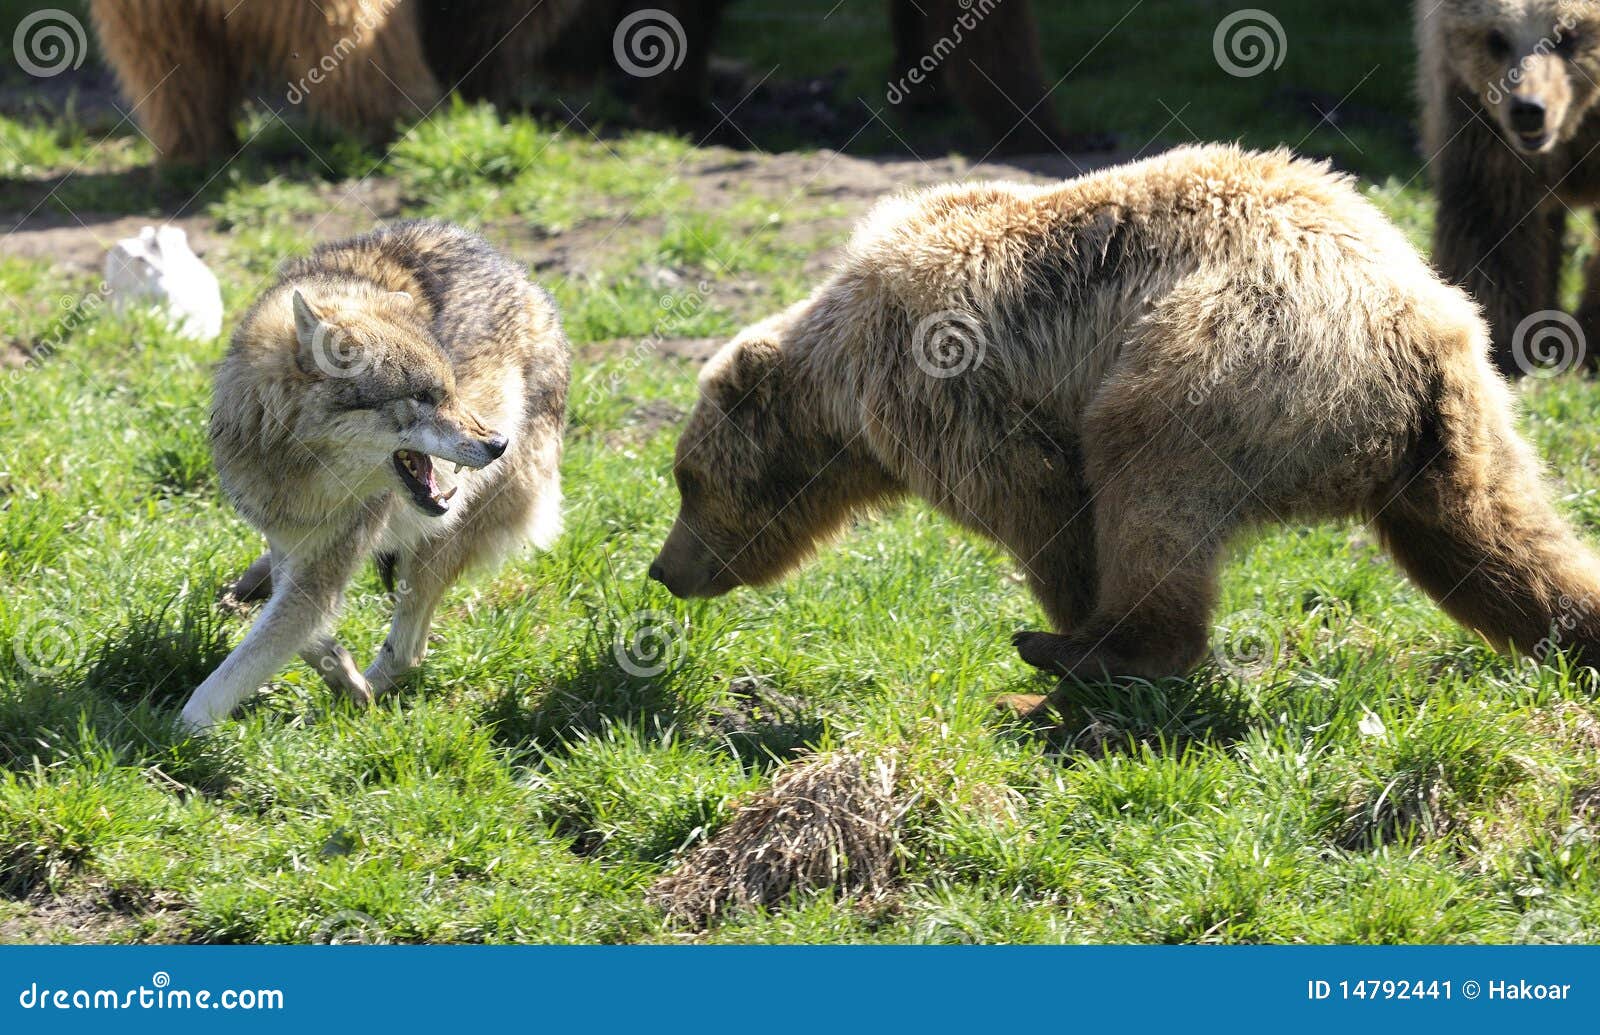 brown bear, ursus arctos